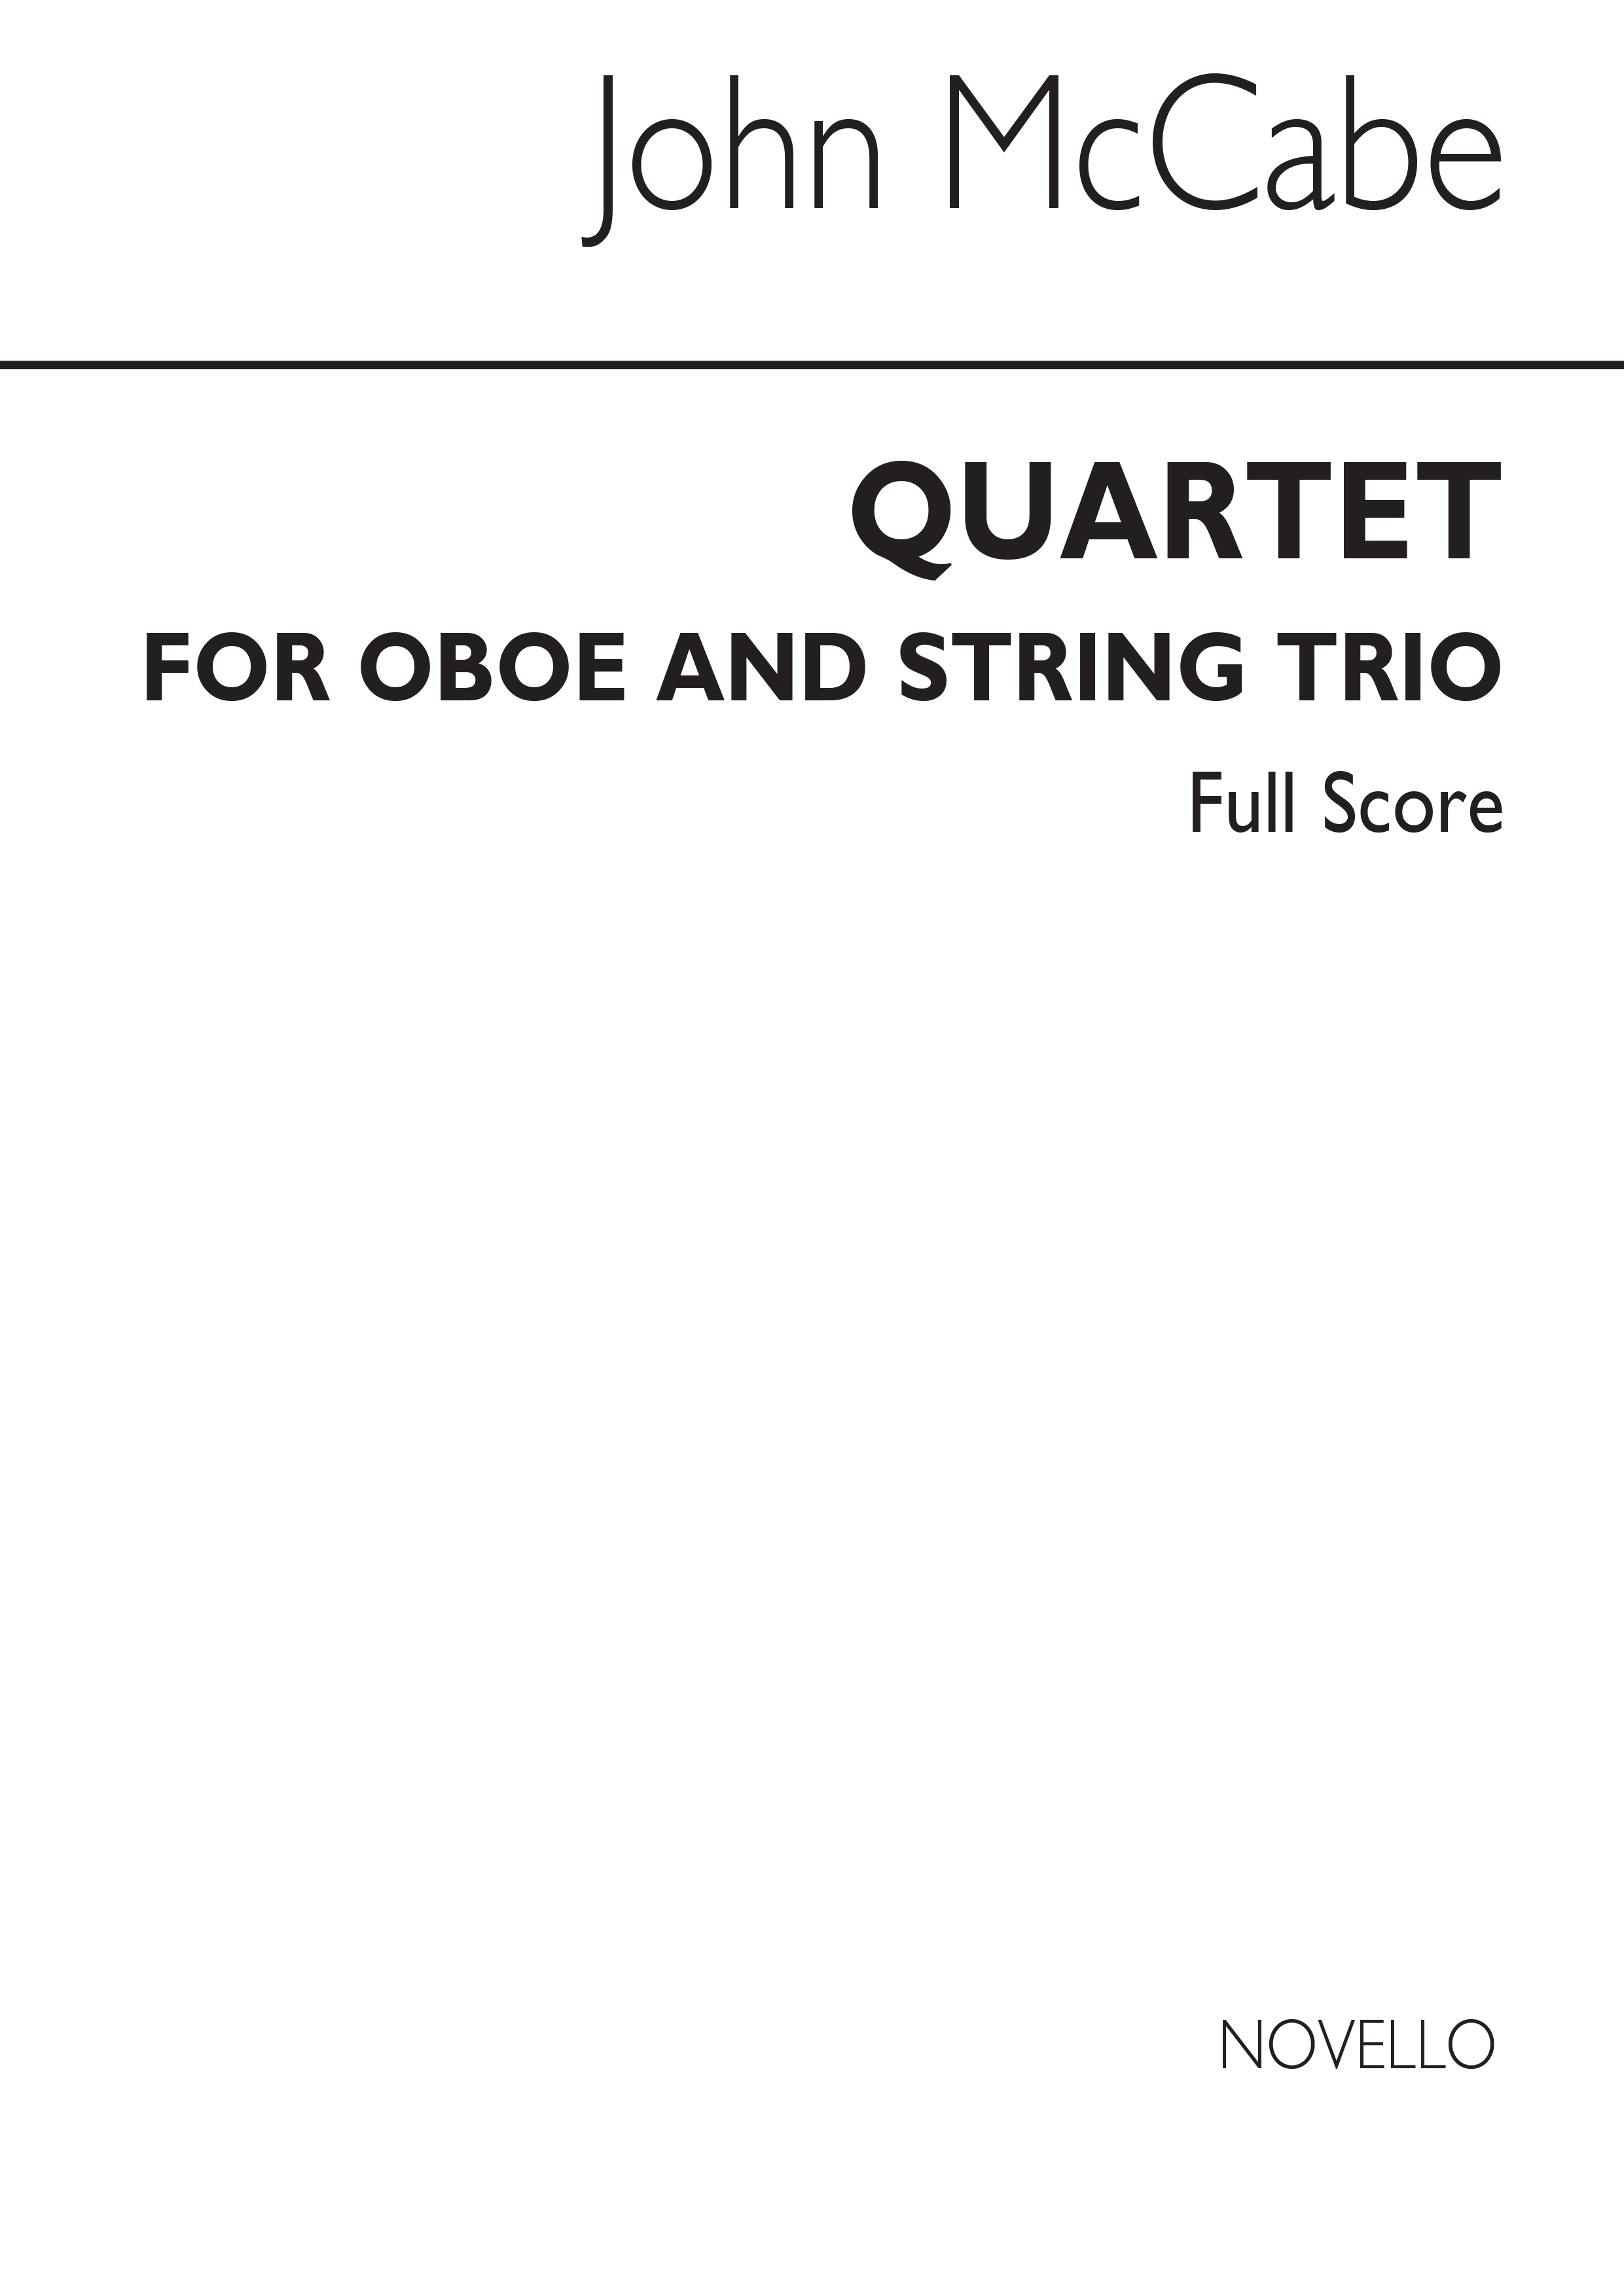 McCabe: Quartet For Oboe & String Trio (Score)